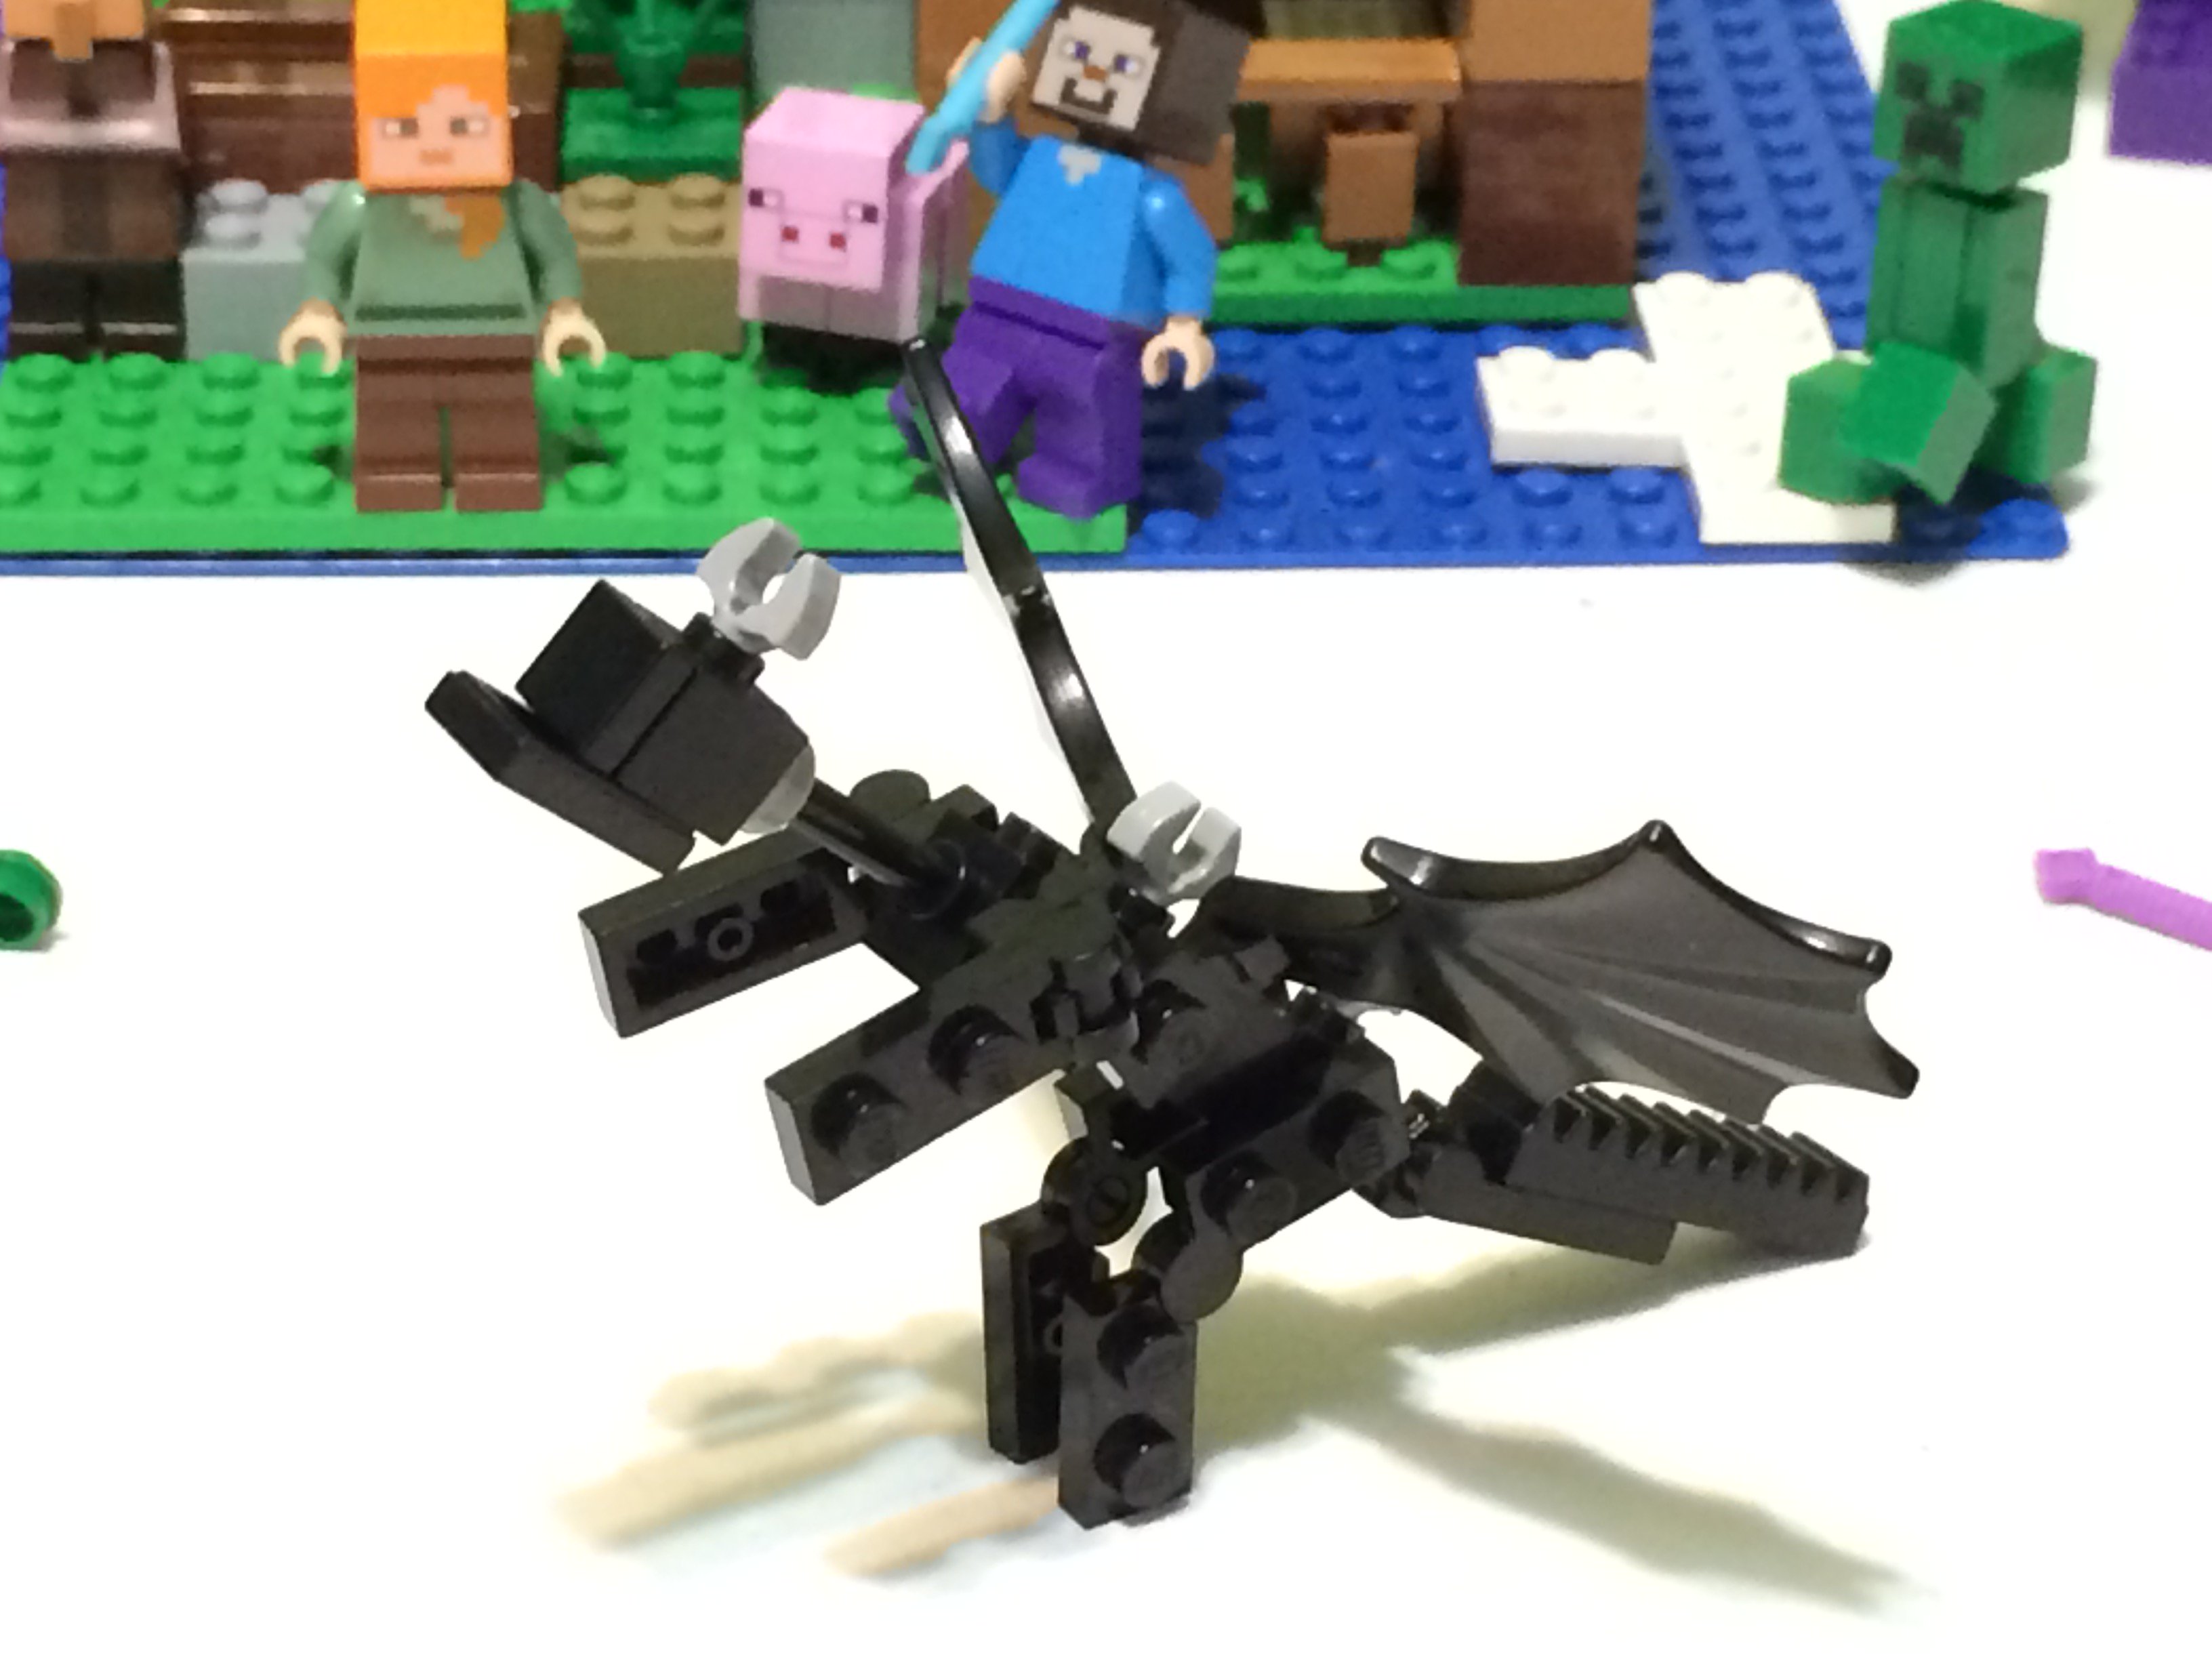 ムキーナスとキョーさん チビムキーナスがマイクラのエンダードラゴンを自作しましたー 作り方はyoutubeで見られるので良かったら見てください T Co Uzdozh6nk4 Minecraft エンダードラゴン Lego T Co 5fpqwokwh6 Twitter